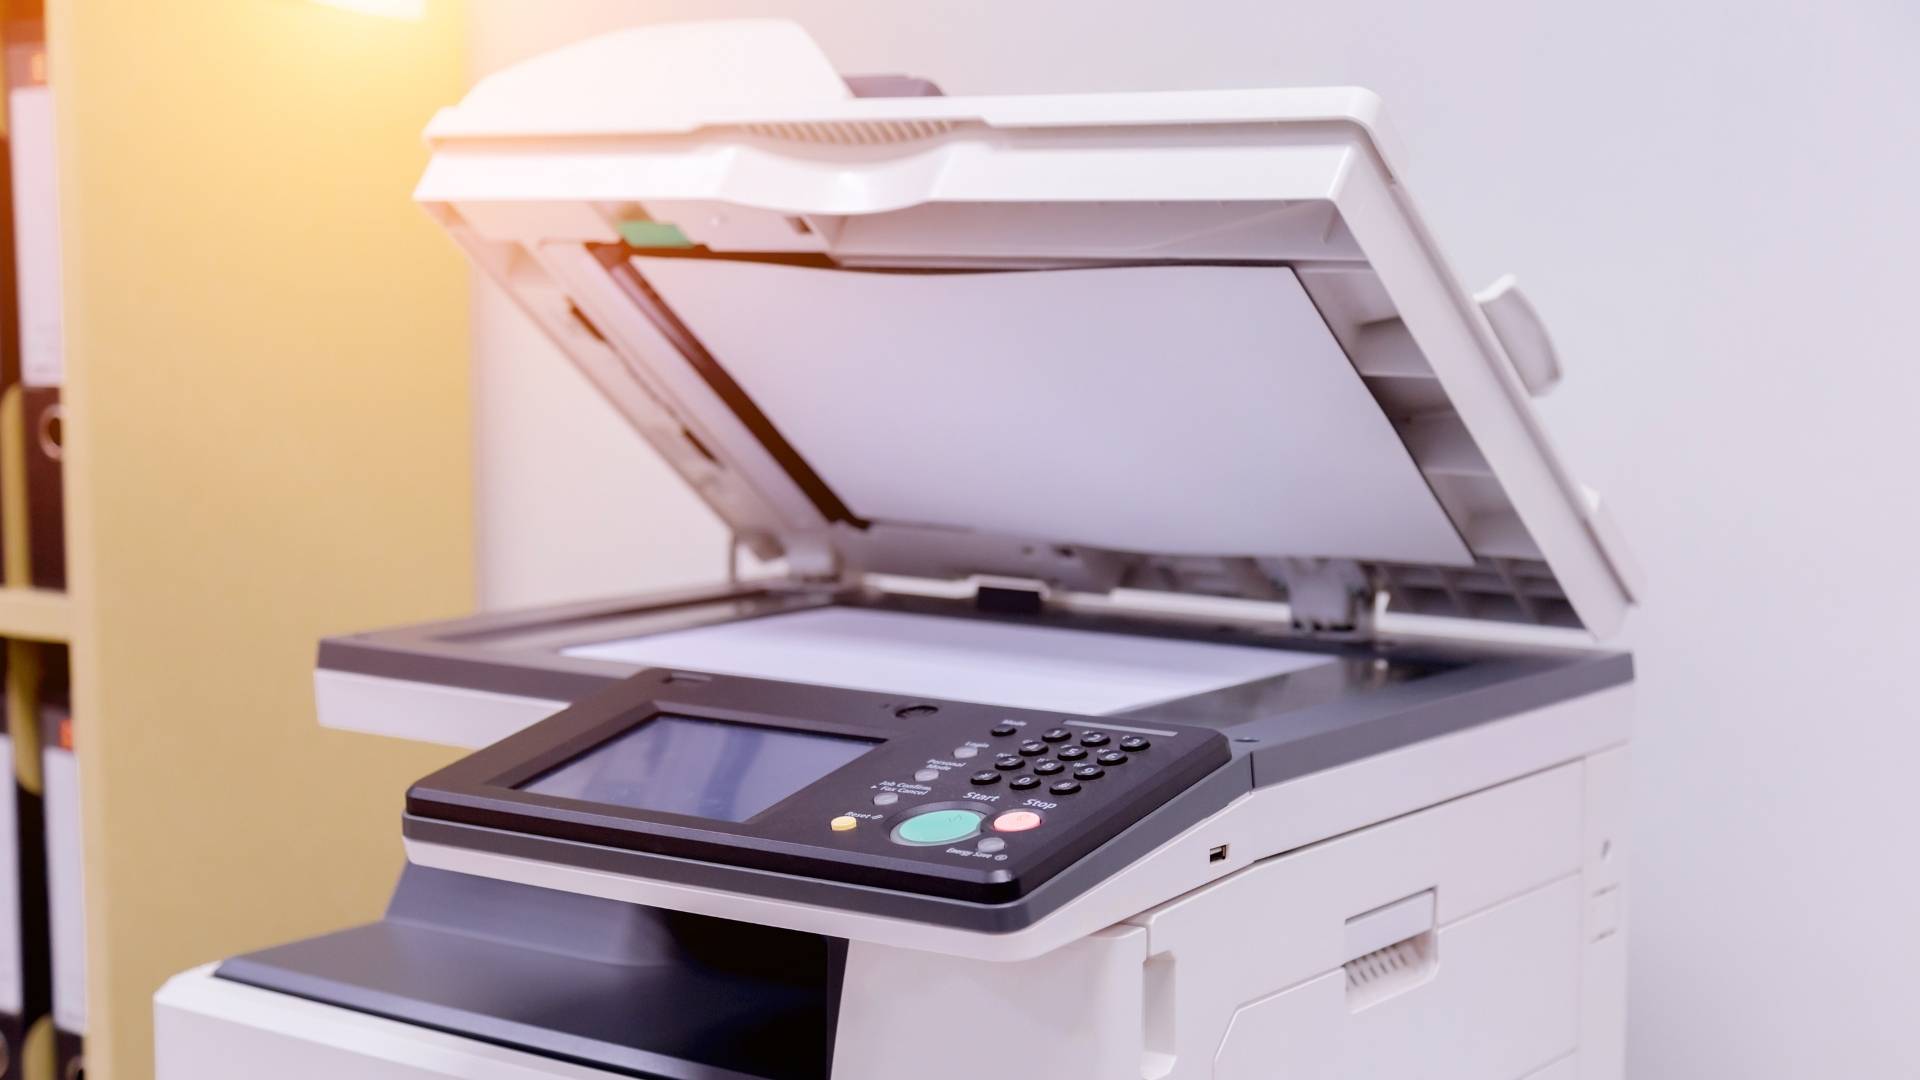 dienen postkantoor per ongeluk Wat is de goedkoopste manier van printen?